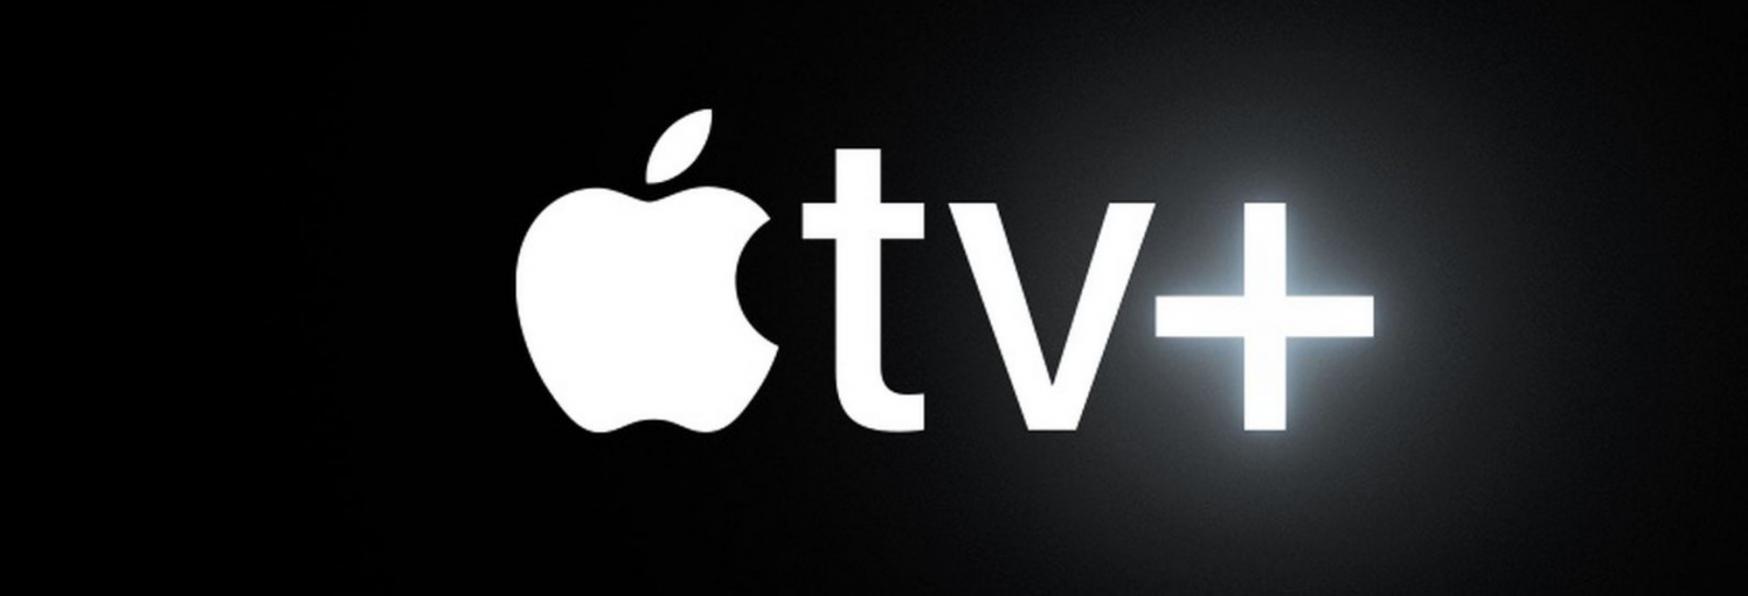 Now And Then: la Data di Uscita e le prime Immagini della nuova Serie TV di Apple